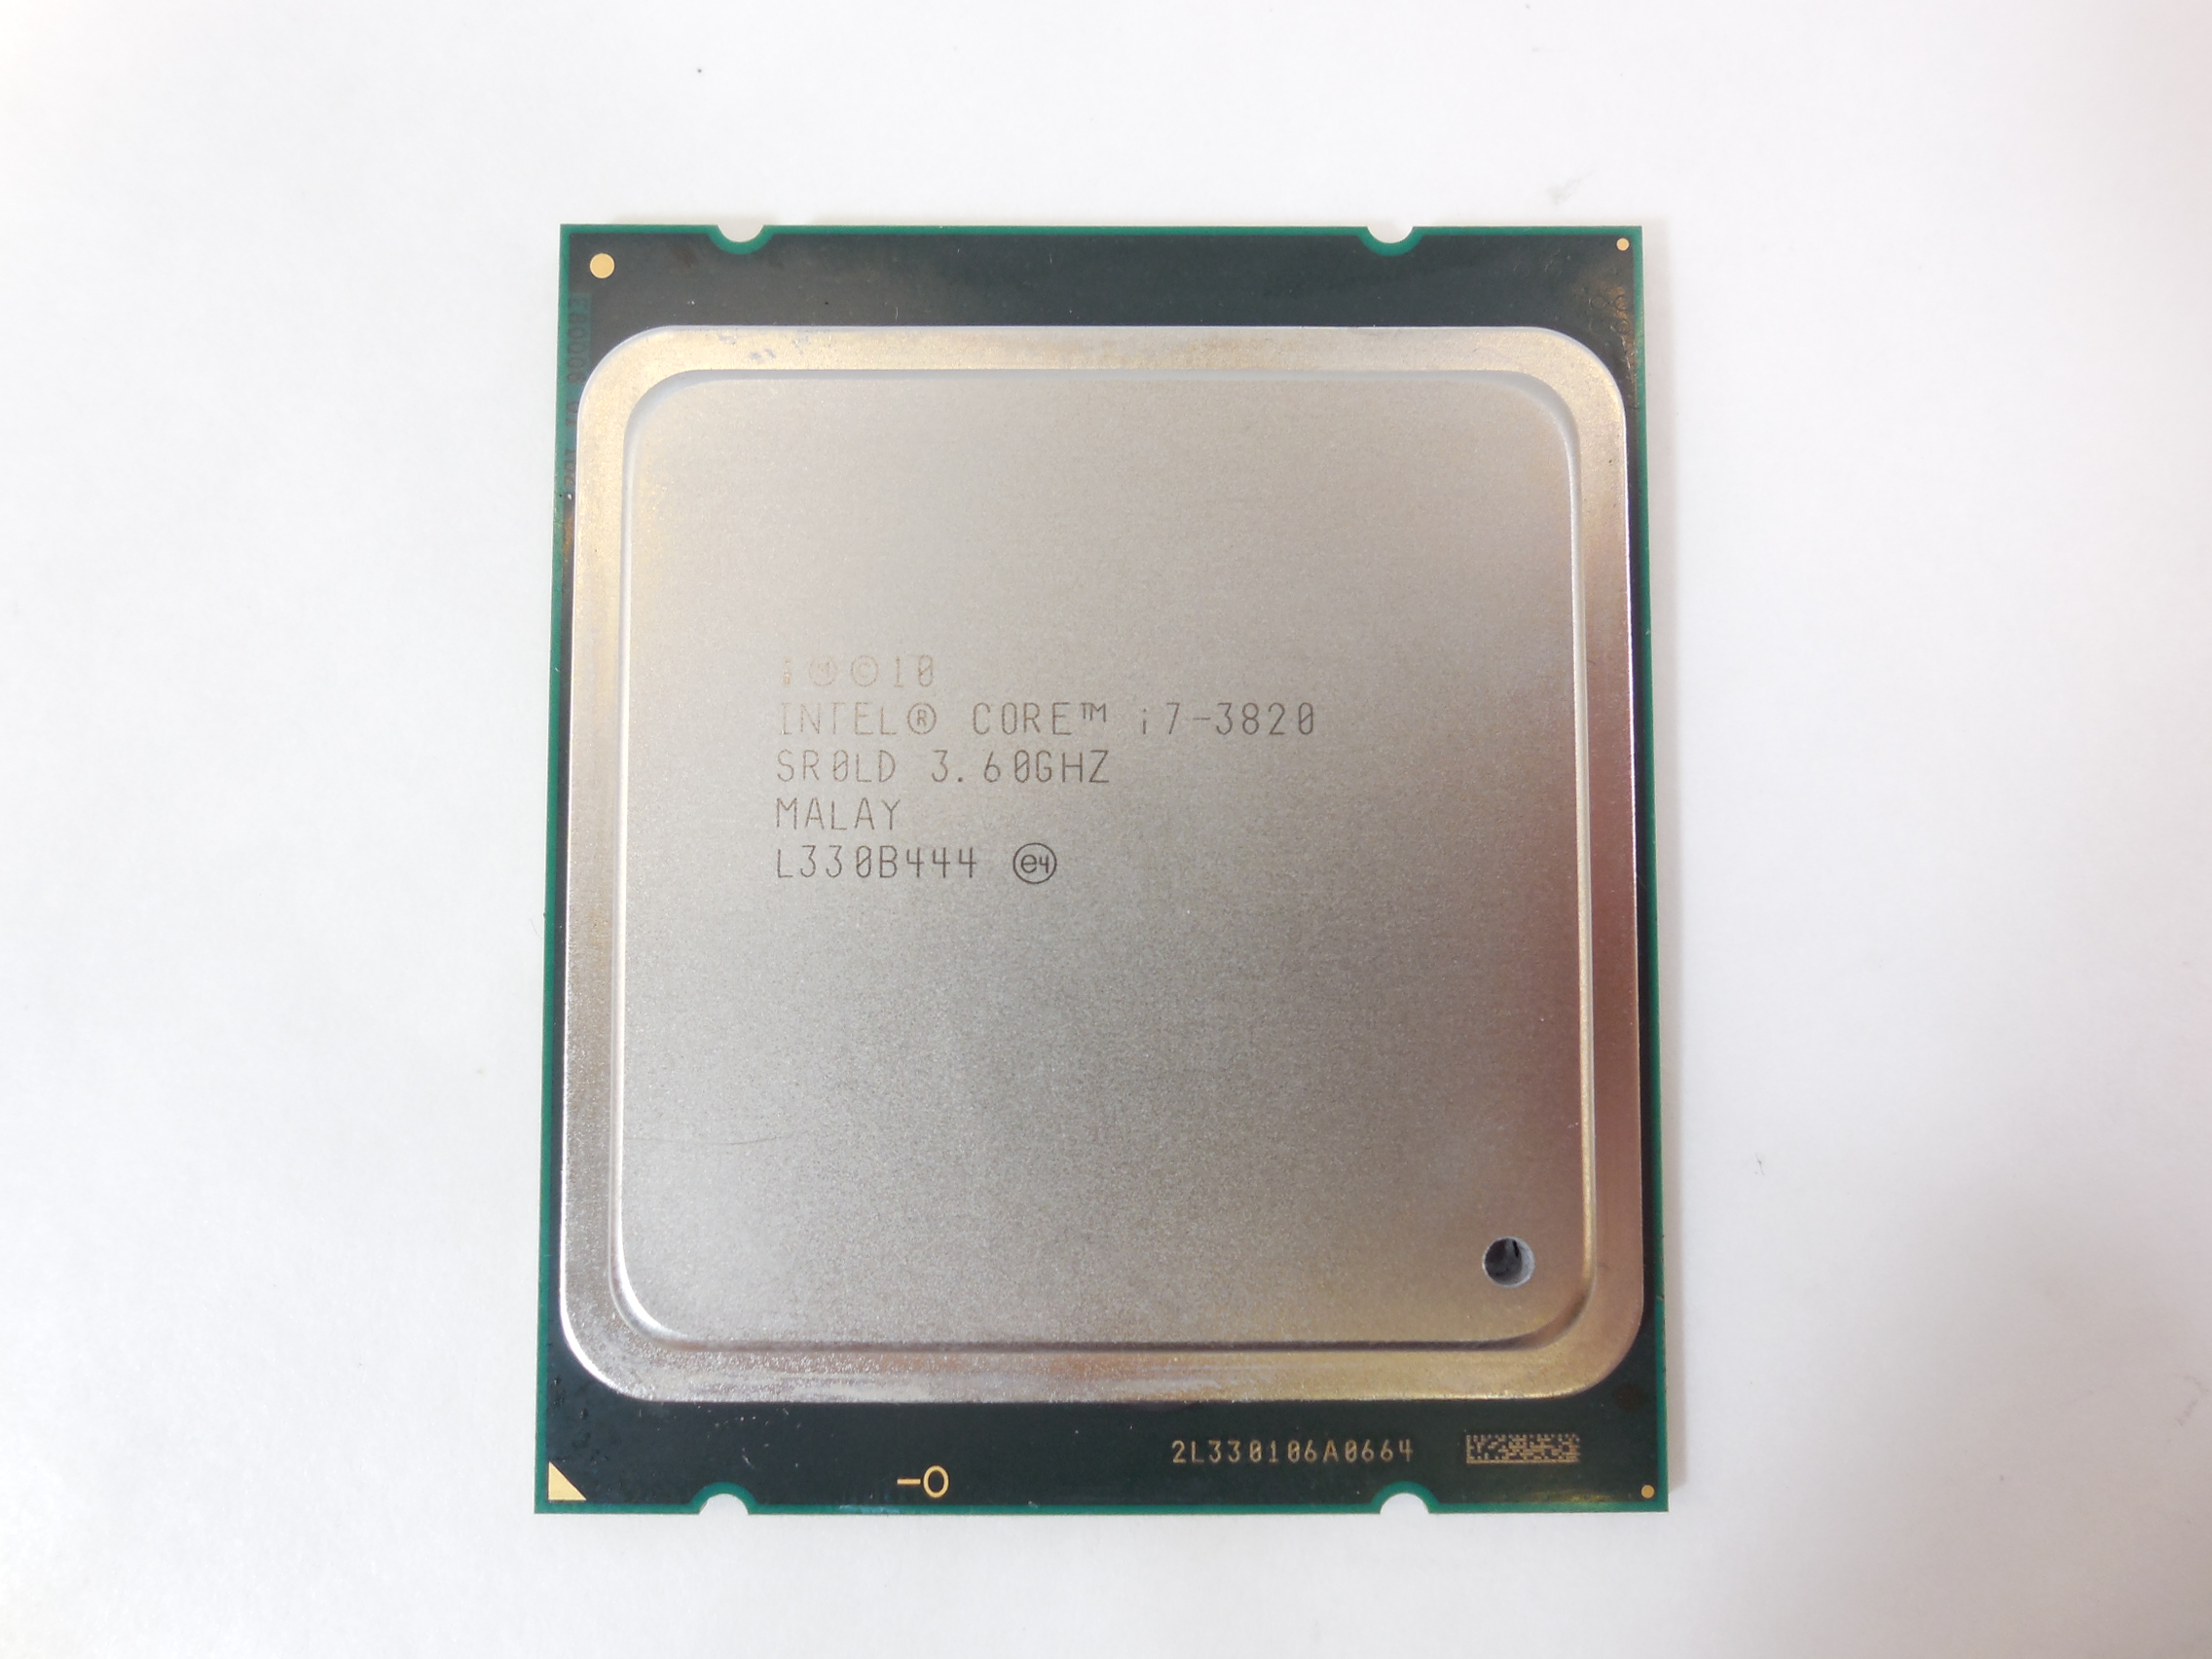 Intel core i5 8 ядер. Intel Core i7 сокет. Intel Core i7-3820 (3,6 ГГЦ). Intel i7-3820 @ 3.6GHZ. I7 2011 сокет.